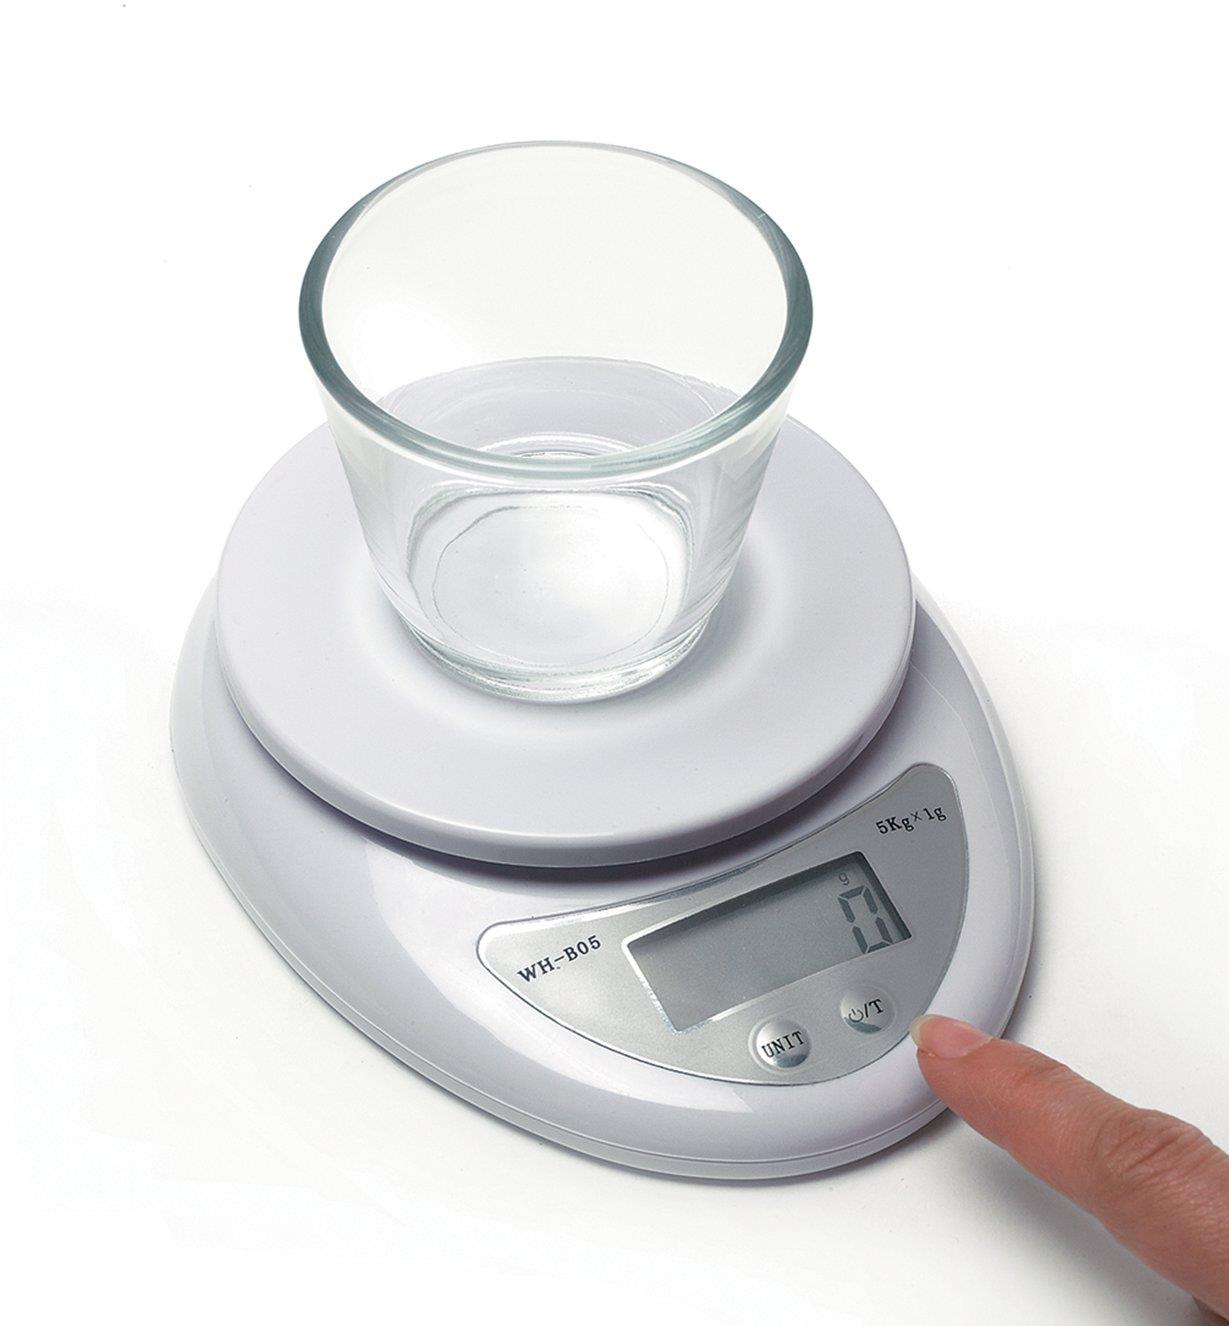 Personne réglant à zéro la tare d'une minibalance de cuisine numérique sur laquelle repose un petit bol en verre